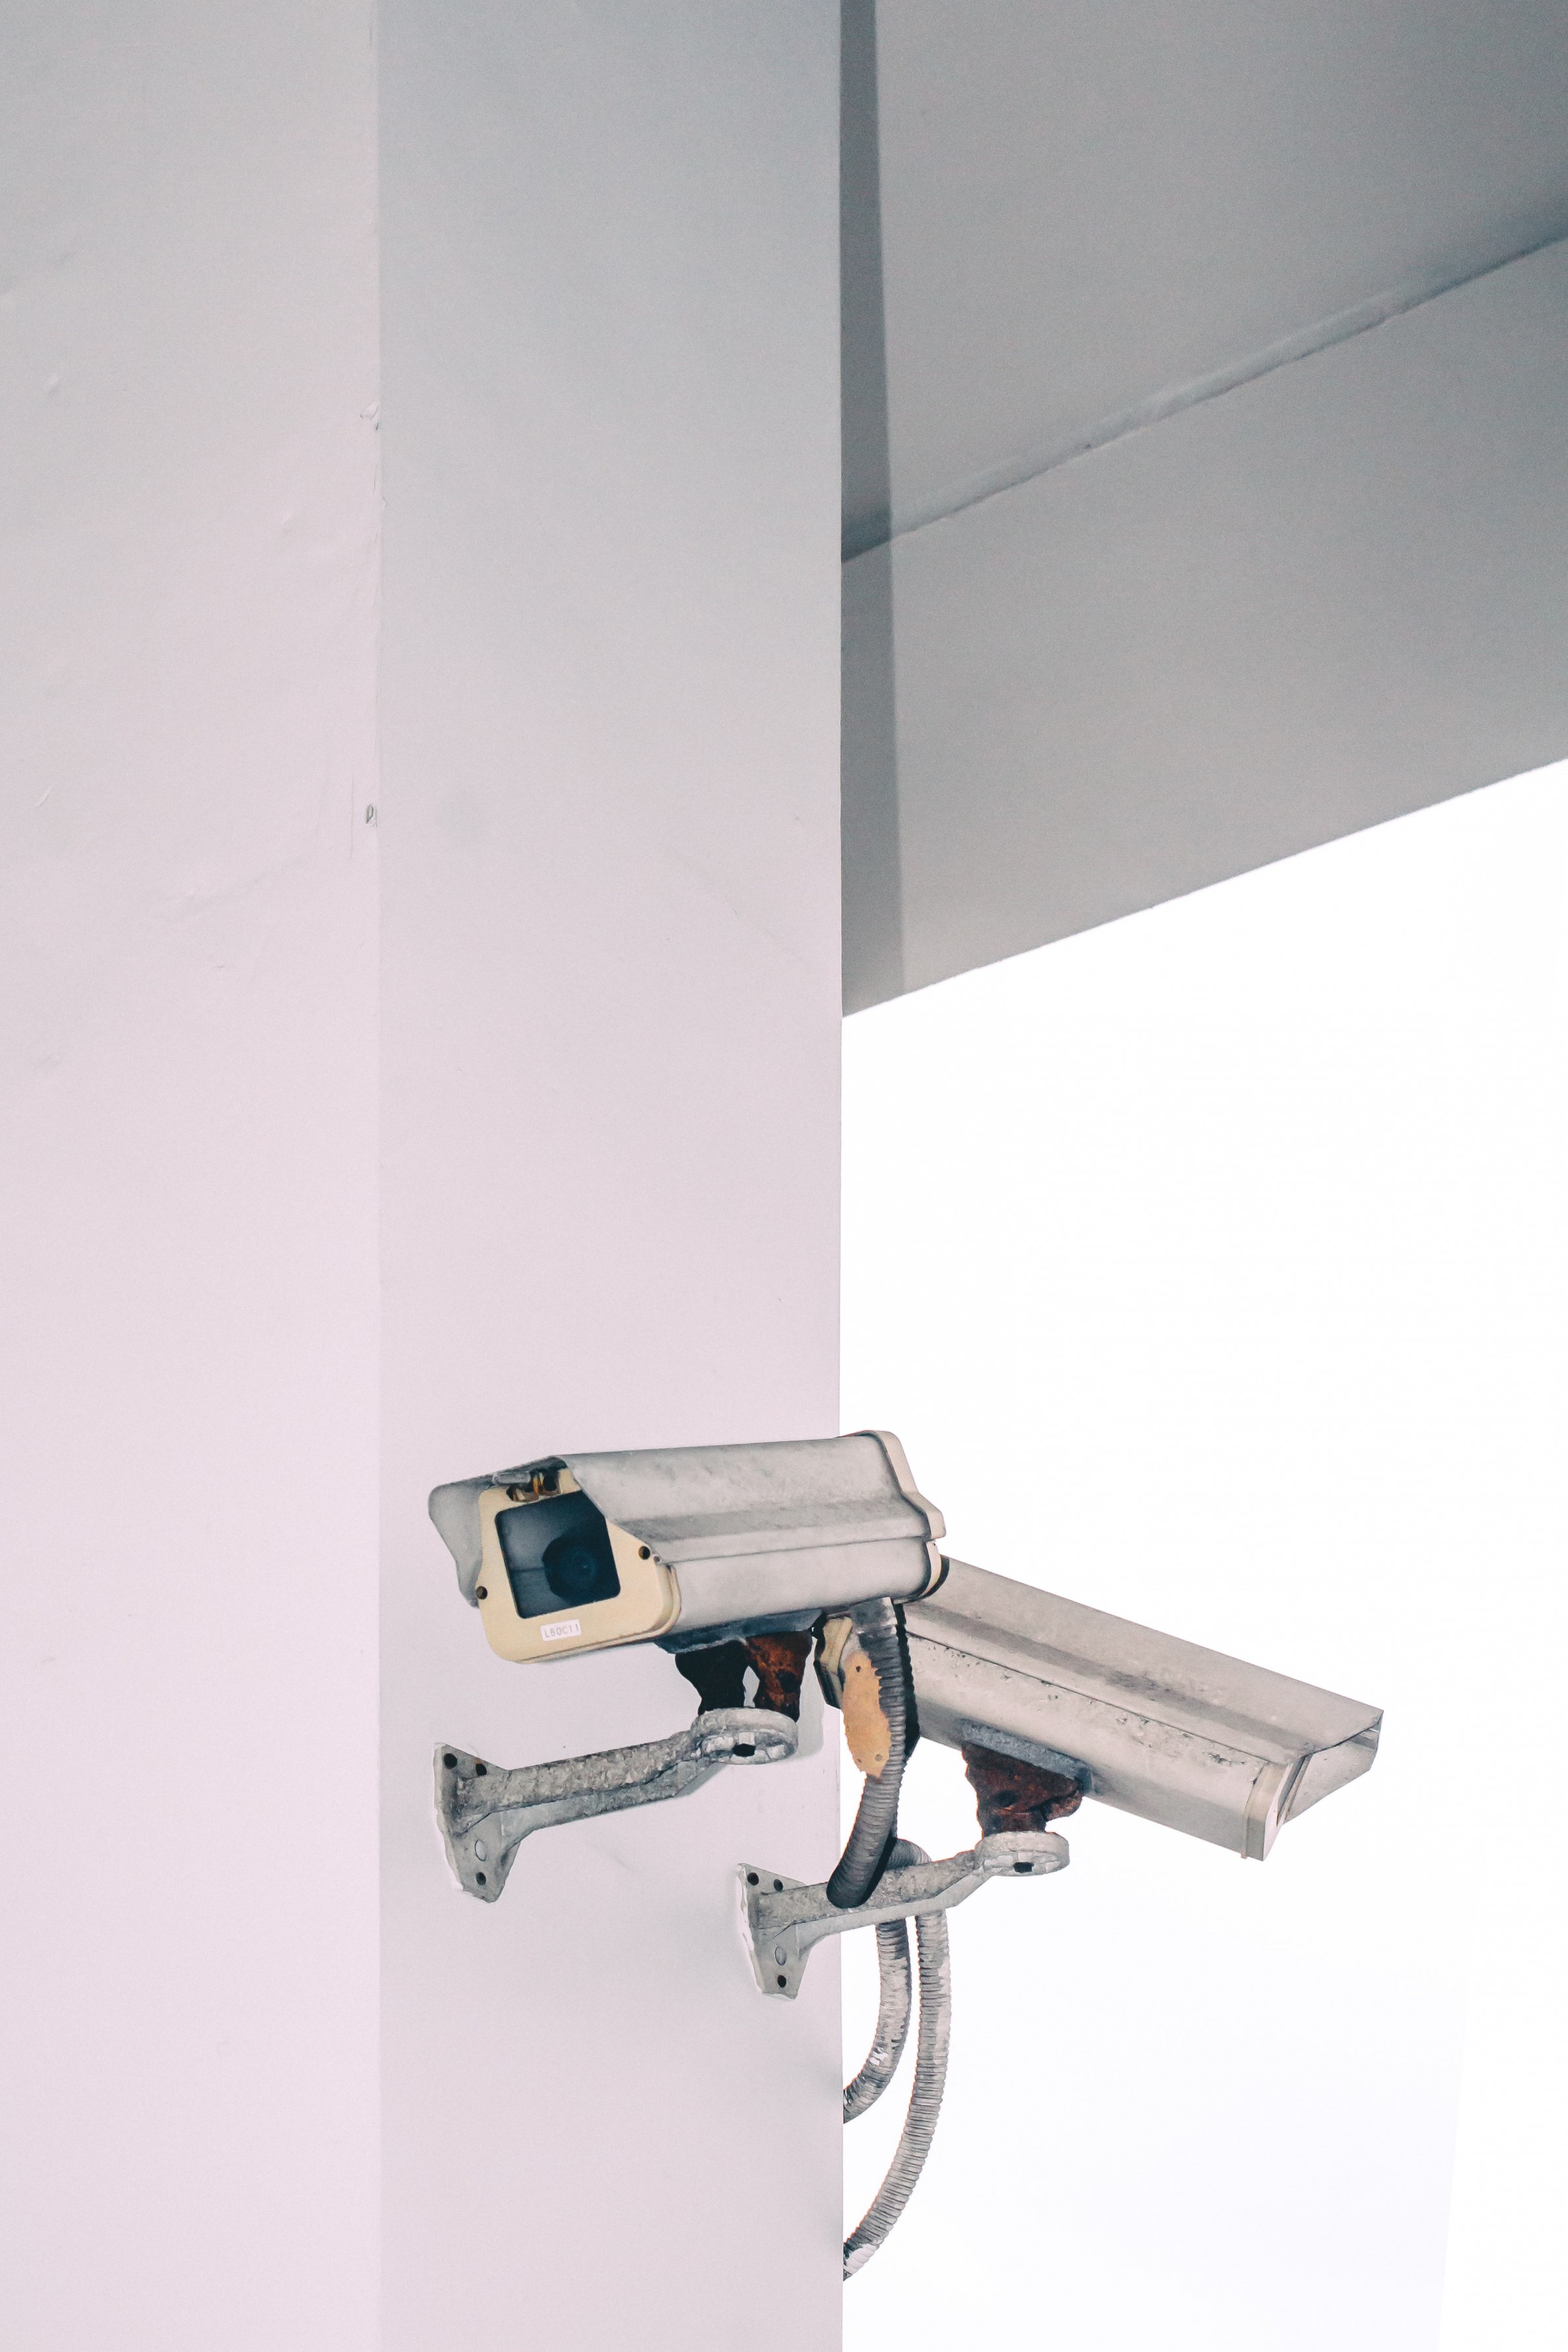 Security Cameras Lethbridge